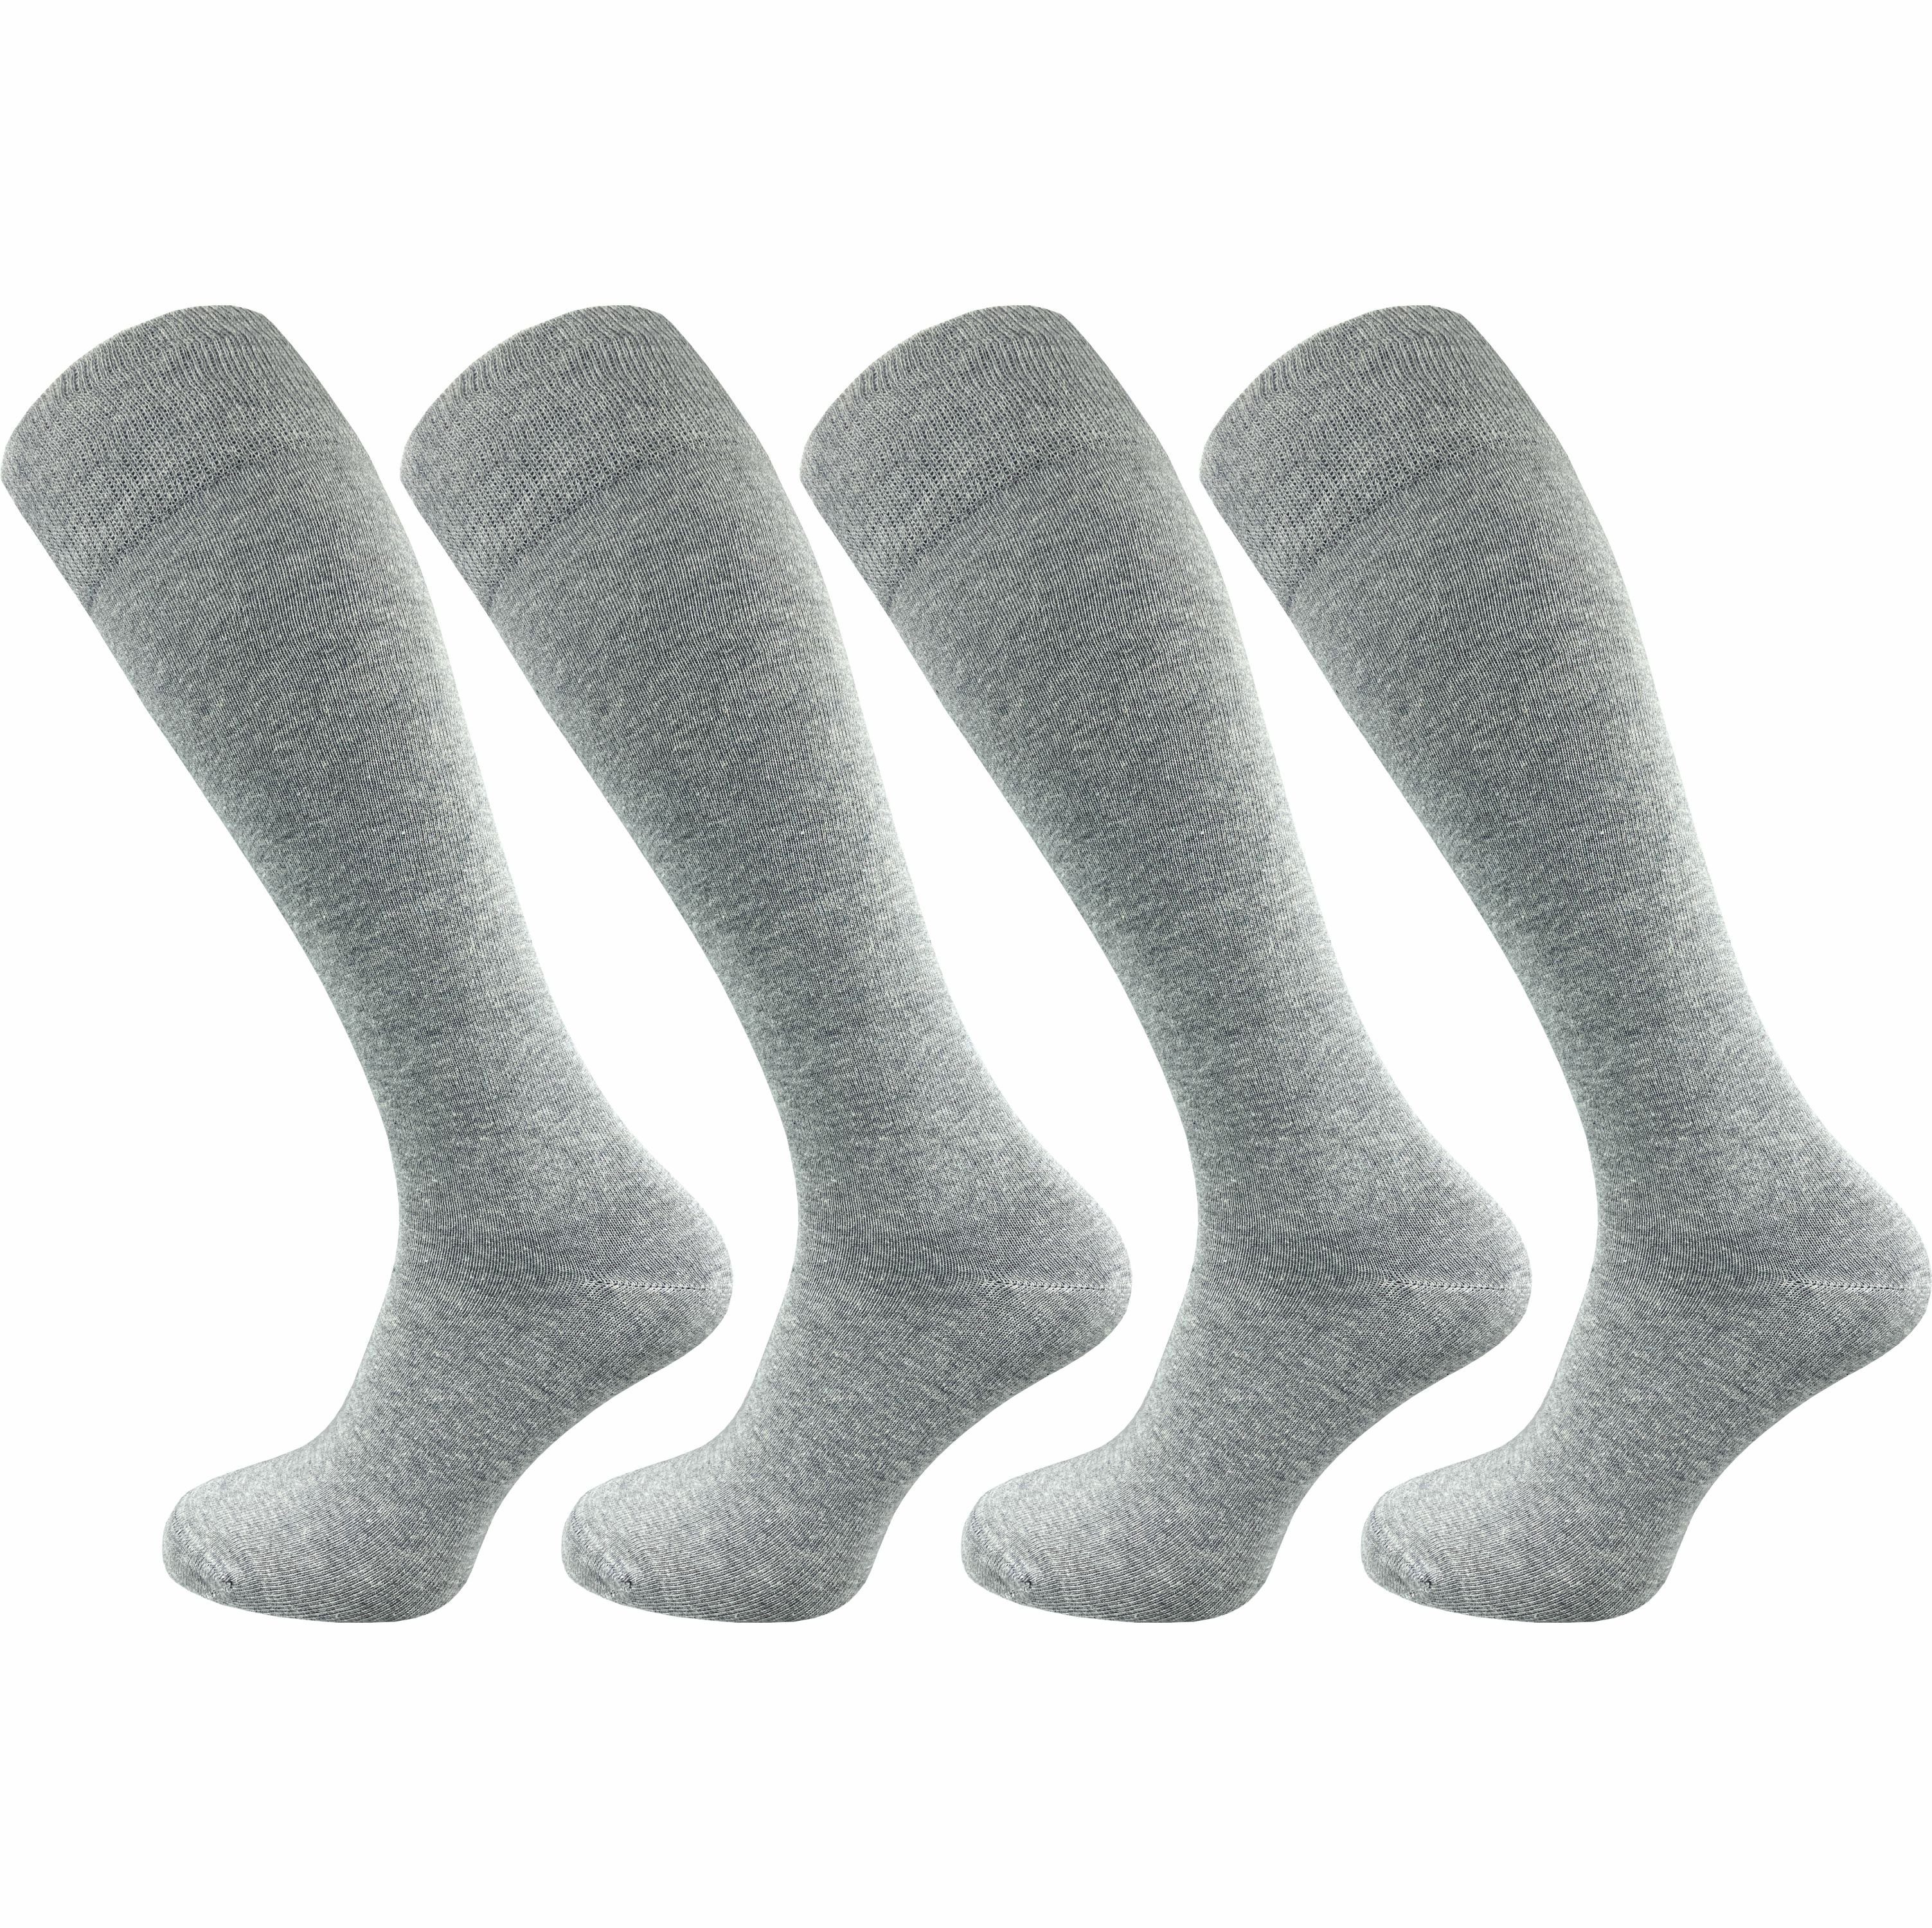 GAWILO Kniestrümpfe für Herren aus Baumwolle - extra weich & ohne drückende Naht (4 Paar) Lange Socken mit speziellem Komfortbund, der nicht einschneidet hellgrau